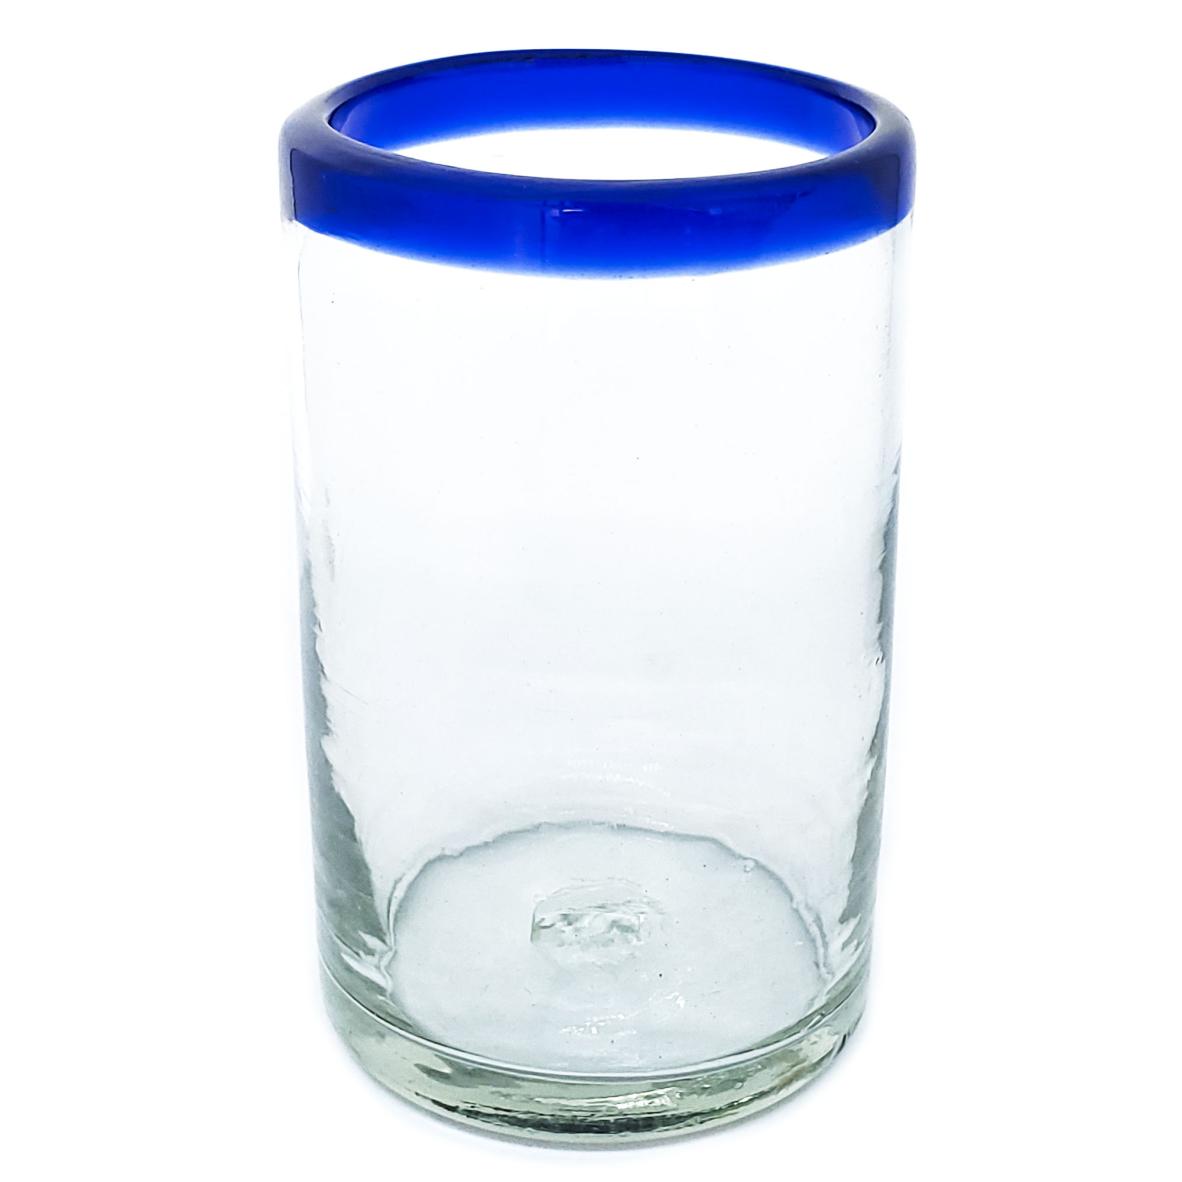 Vasos de Vidrio Soplado / Juego de 6 vasos grandes con borde azul cobalto / stos artesanales vasos le darn un toque clsico a su bebida favorita.